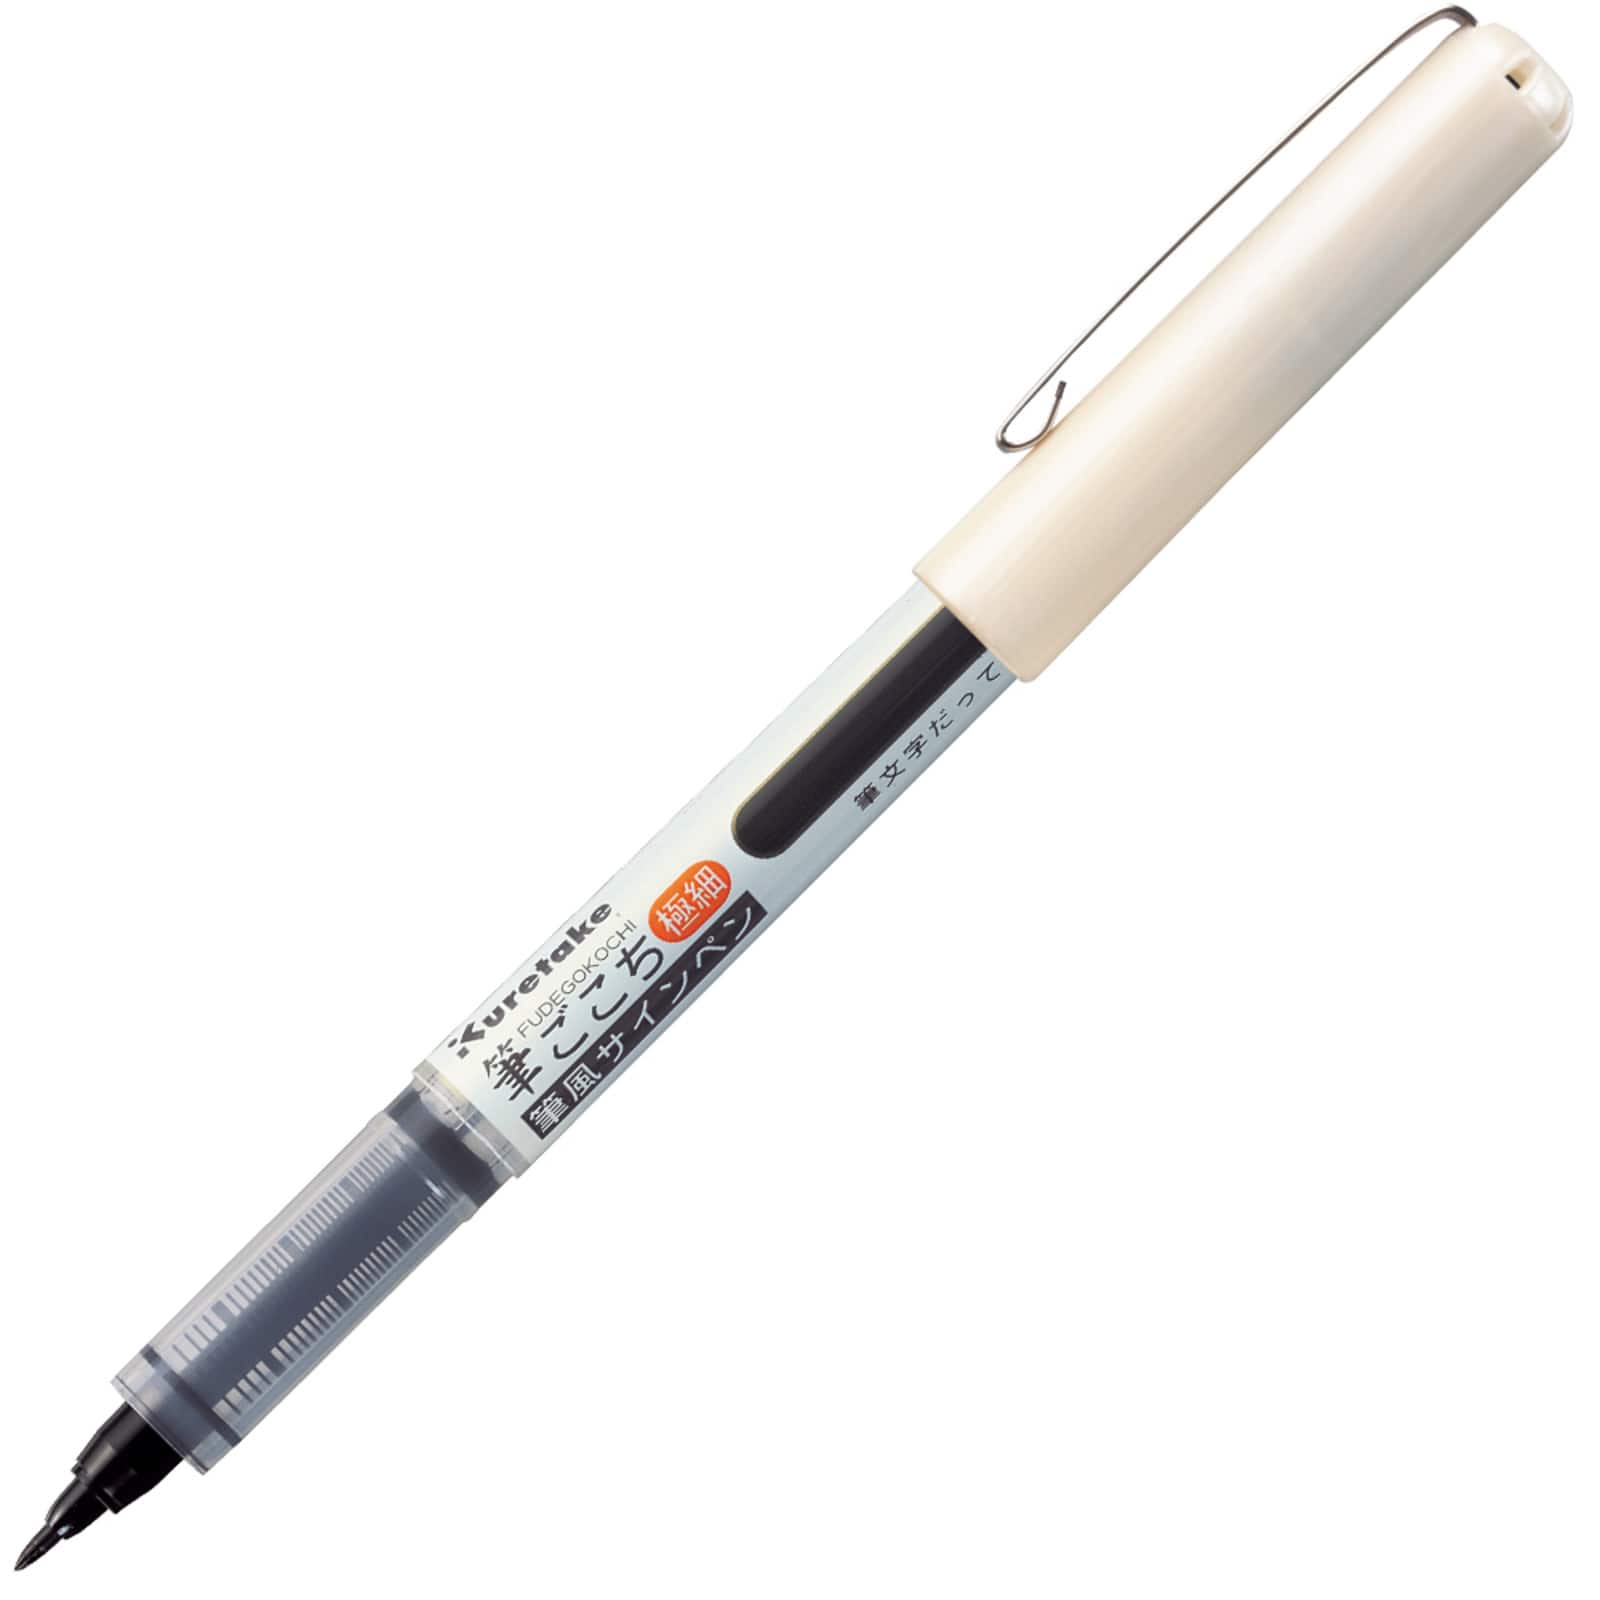 Kuretake Zig Fudegocochi Extra-Fine Brush Pen